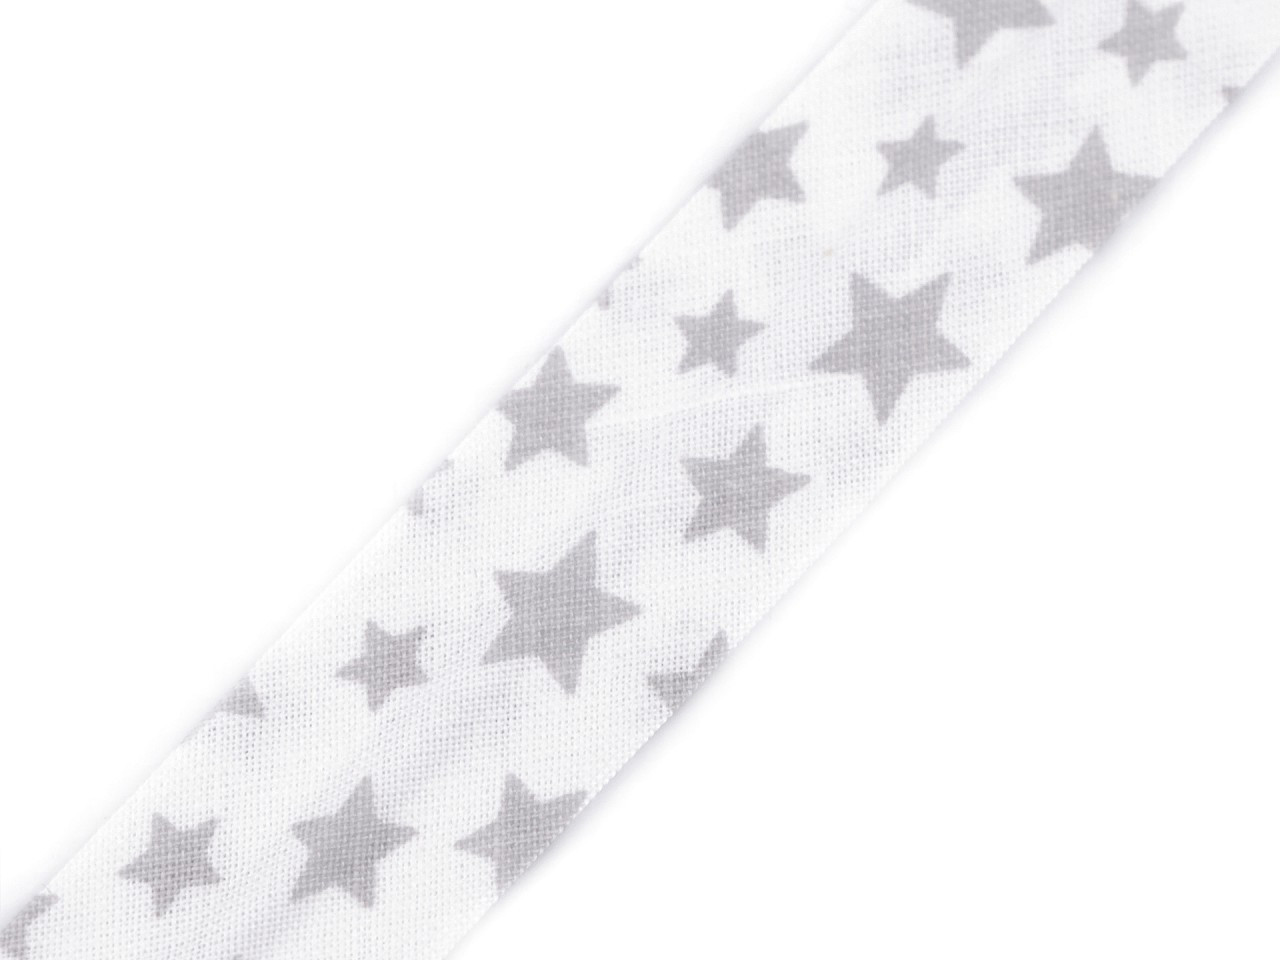 Šikmý proužek bavlněný puntík, káro, hvězdy, jemný proužek šíře 20 mm zažehlený, barva 380904/1 bílá hvězdy